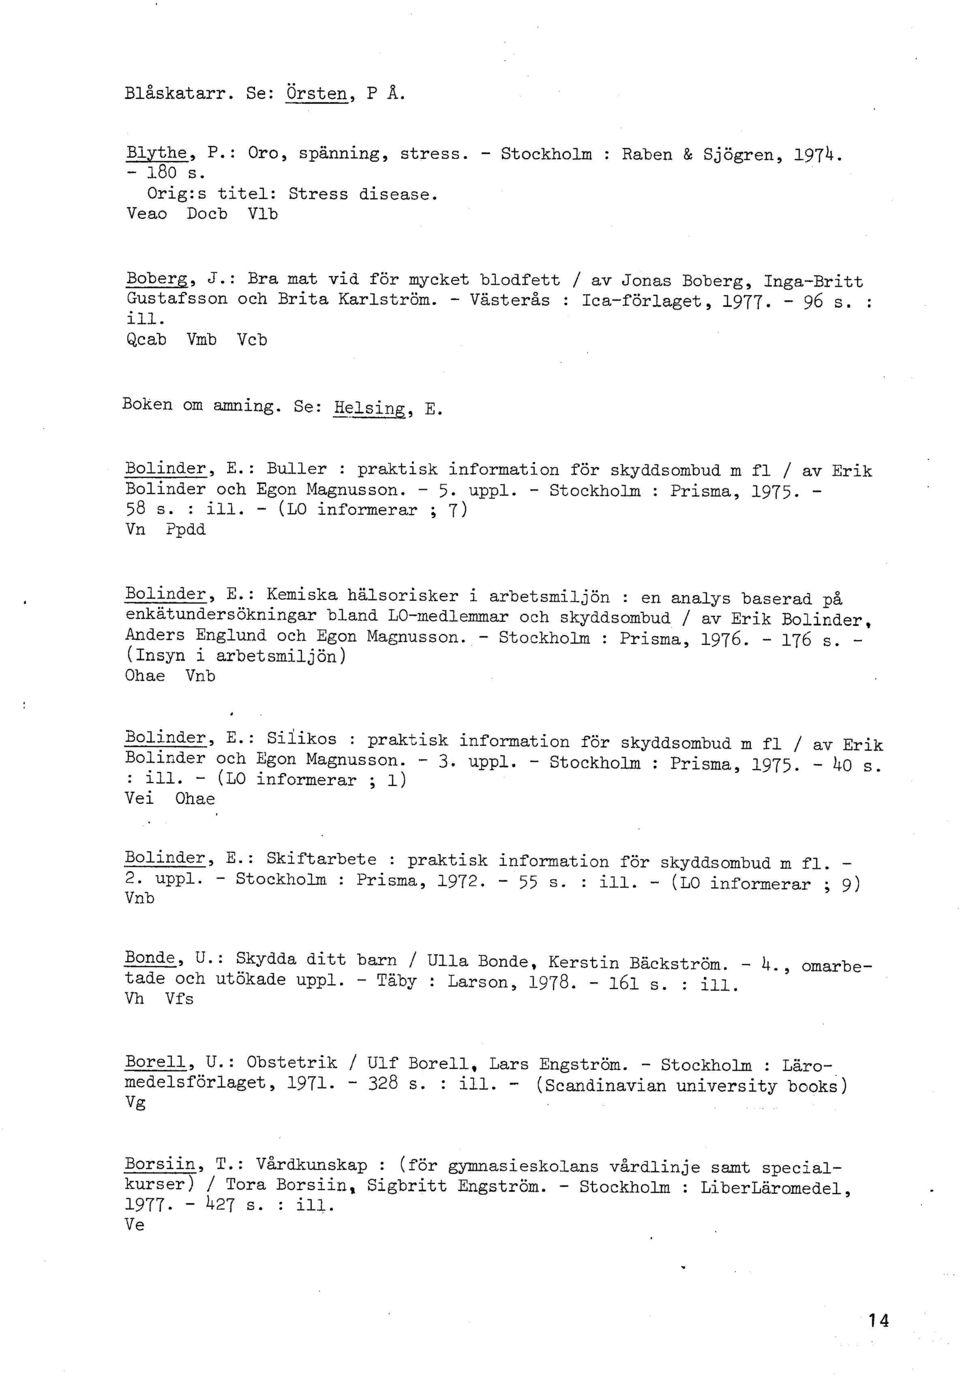 : Buller : praktisk information för skyddsombud m fl / av Erik Bolinder och Egon Magnusson. - 5. uppl. - Stockholm : Prisma, 1975. - 58 s. : ili. - (LO informerar ; 7) Vn Ppdd Bolinder, E.